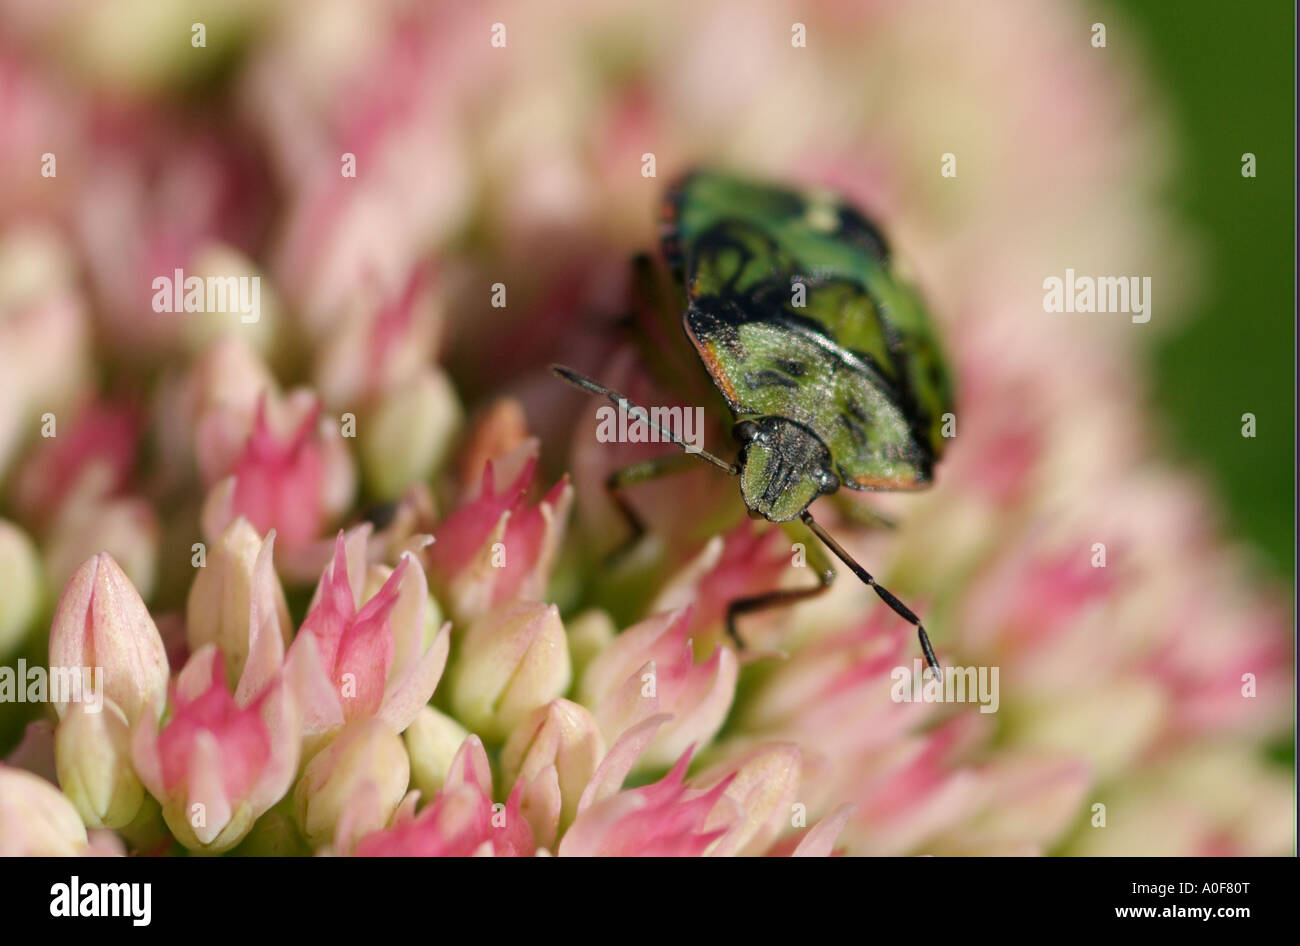 Green Shield bug sur les fleurs, l'insecte est un ravageur des fruits et légumes Banque D'Images